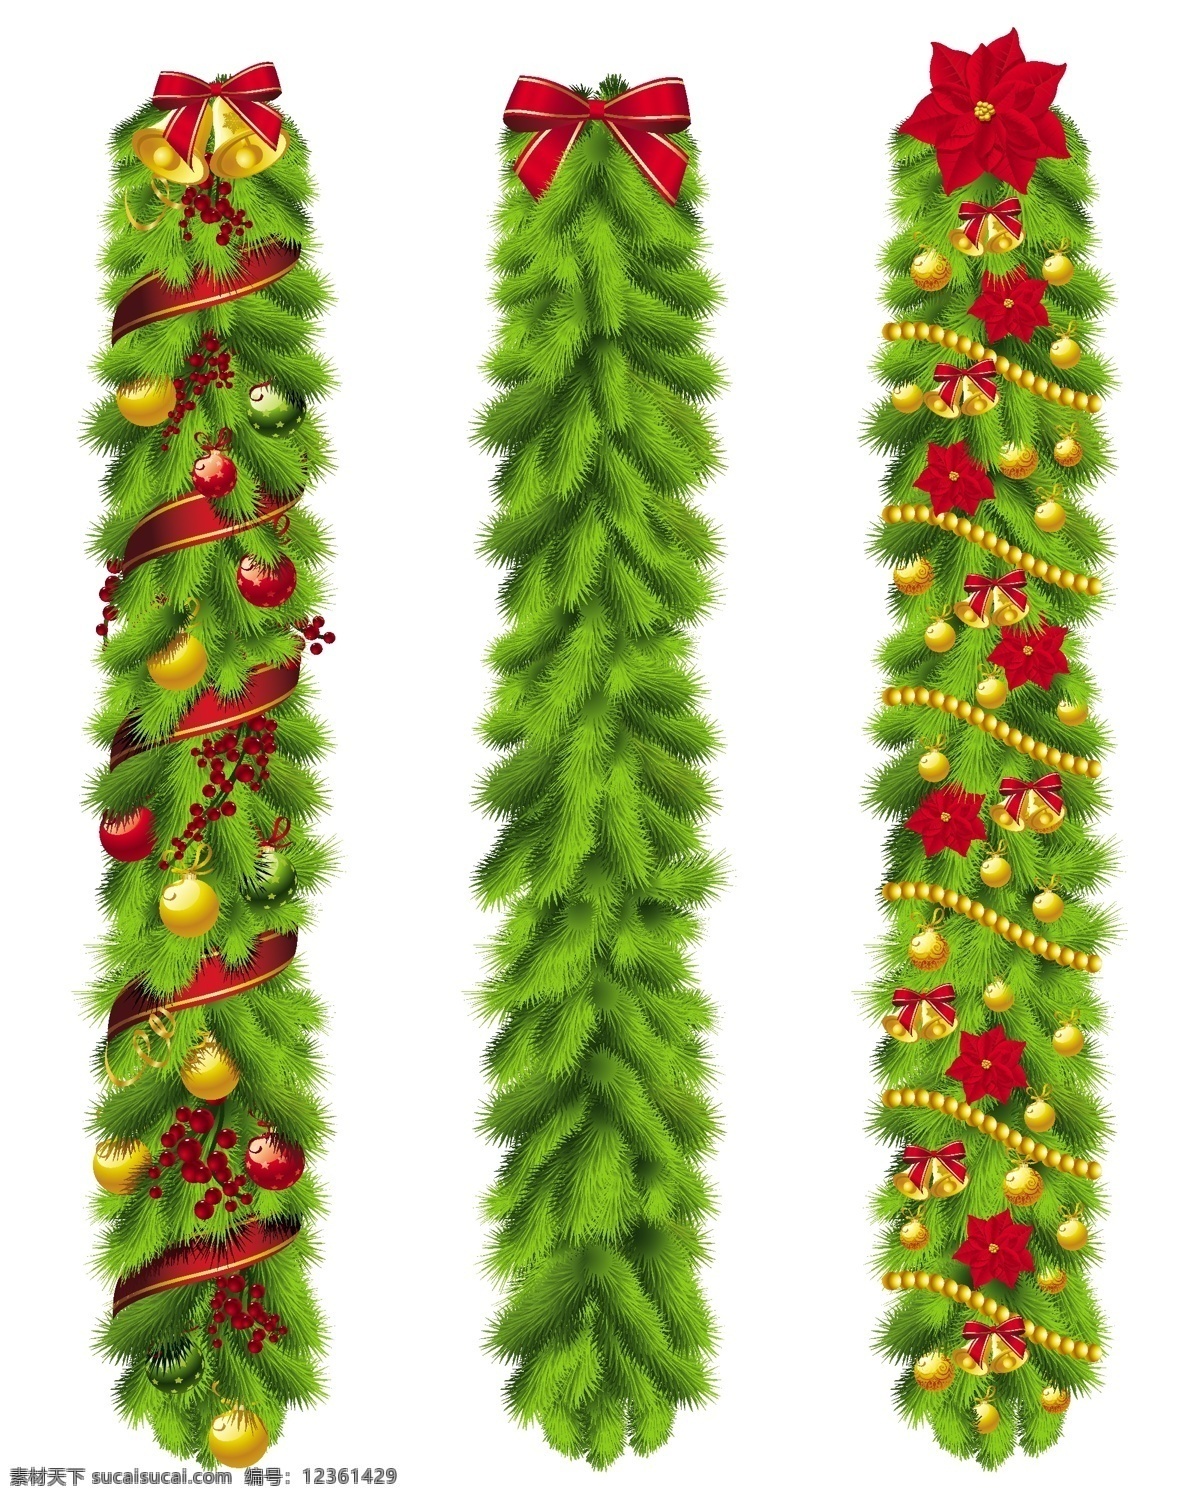 潮流 蝴蝶结 节日素材 铃铛 绿色 圣诞 圣诞节 圣诞球 松树枝 装饰 矢量 模板下载 丝带 元素 时尚 圣诞主题 家居装饰素材